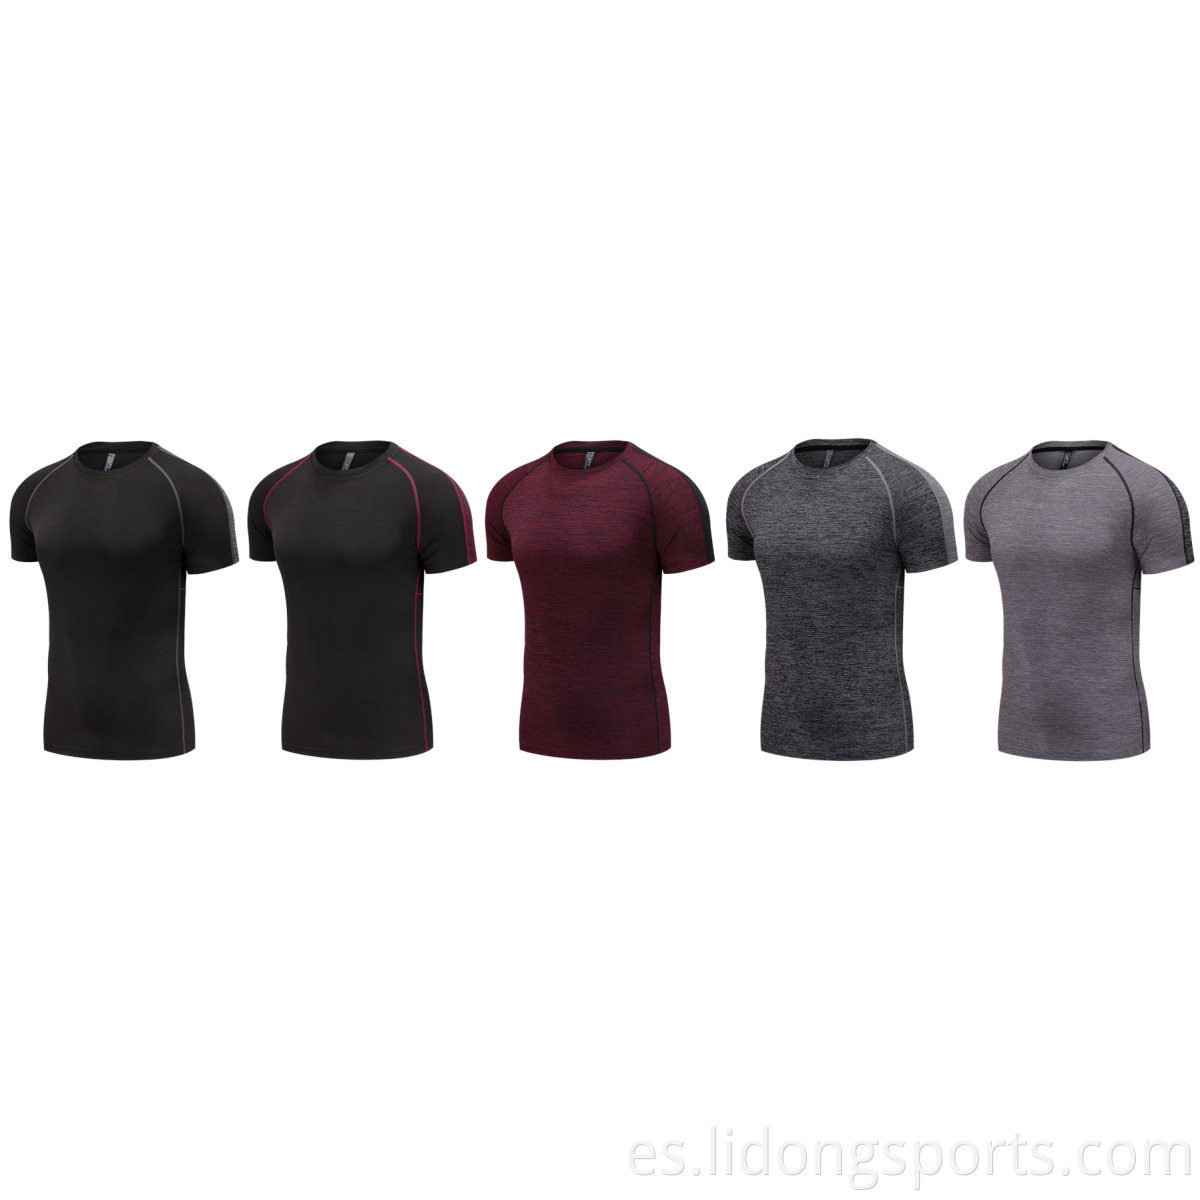 Camisetas para hombres Camisetas de compresión seca rápida Camisetas de fitness gimnasio Camisetas de fútbol camisas para hombres